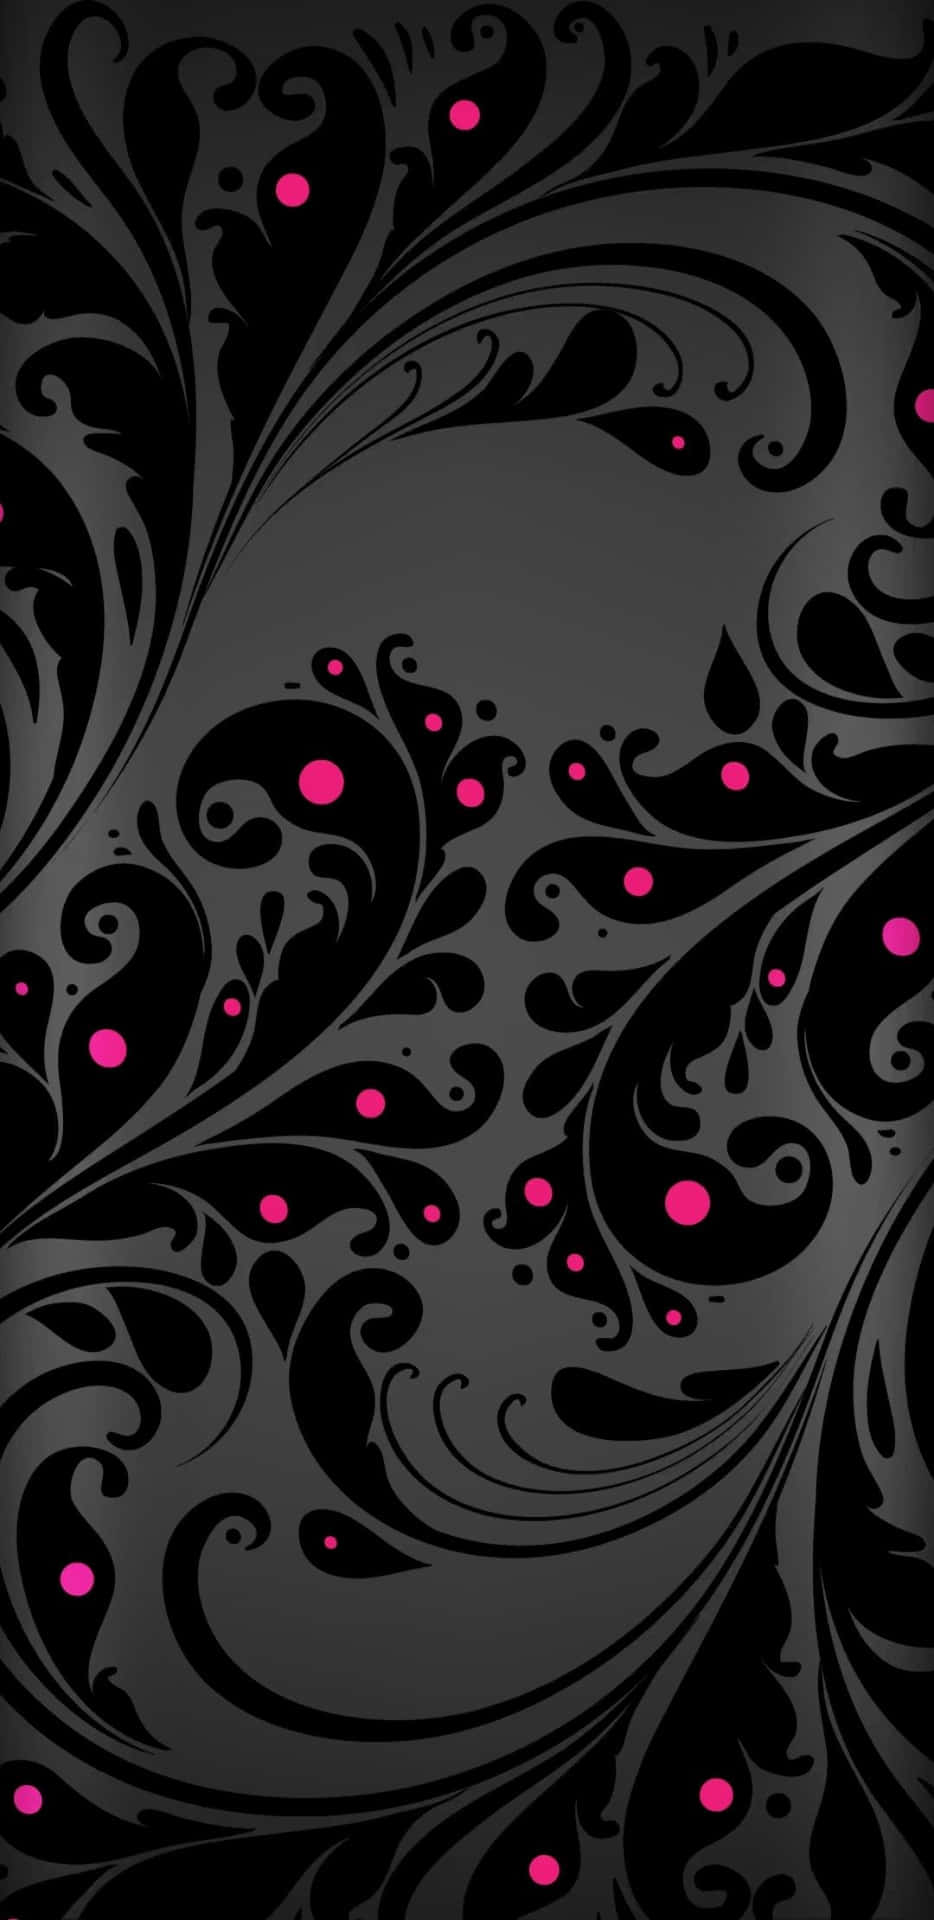 Einefrische Farbkombination Aussuchen: Pink, Schwarz Und Weiß. Wallpaper